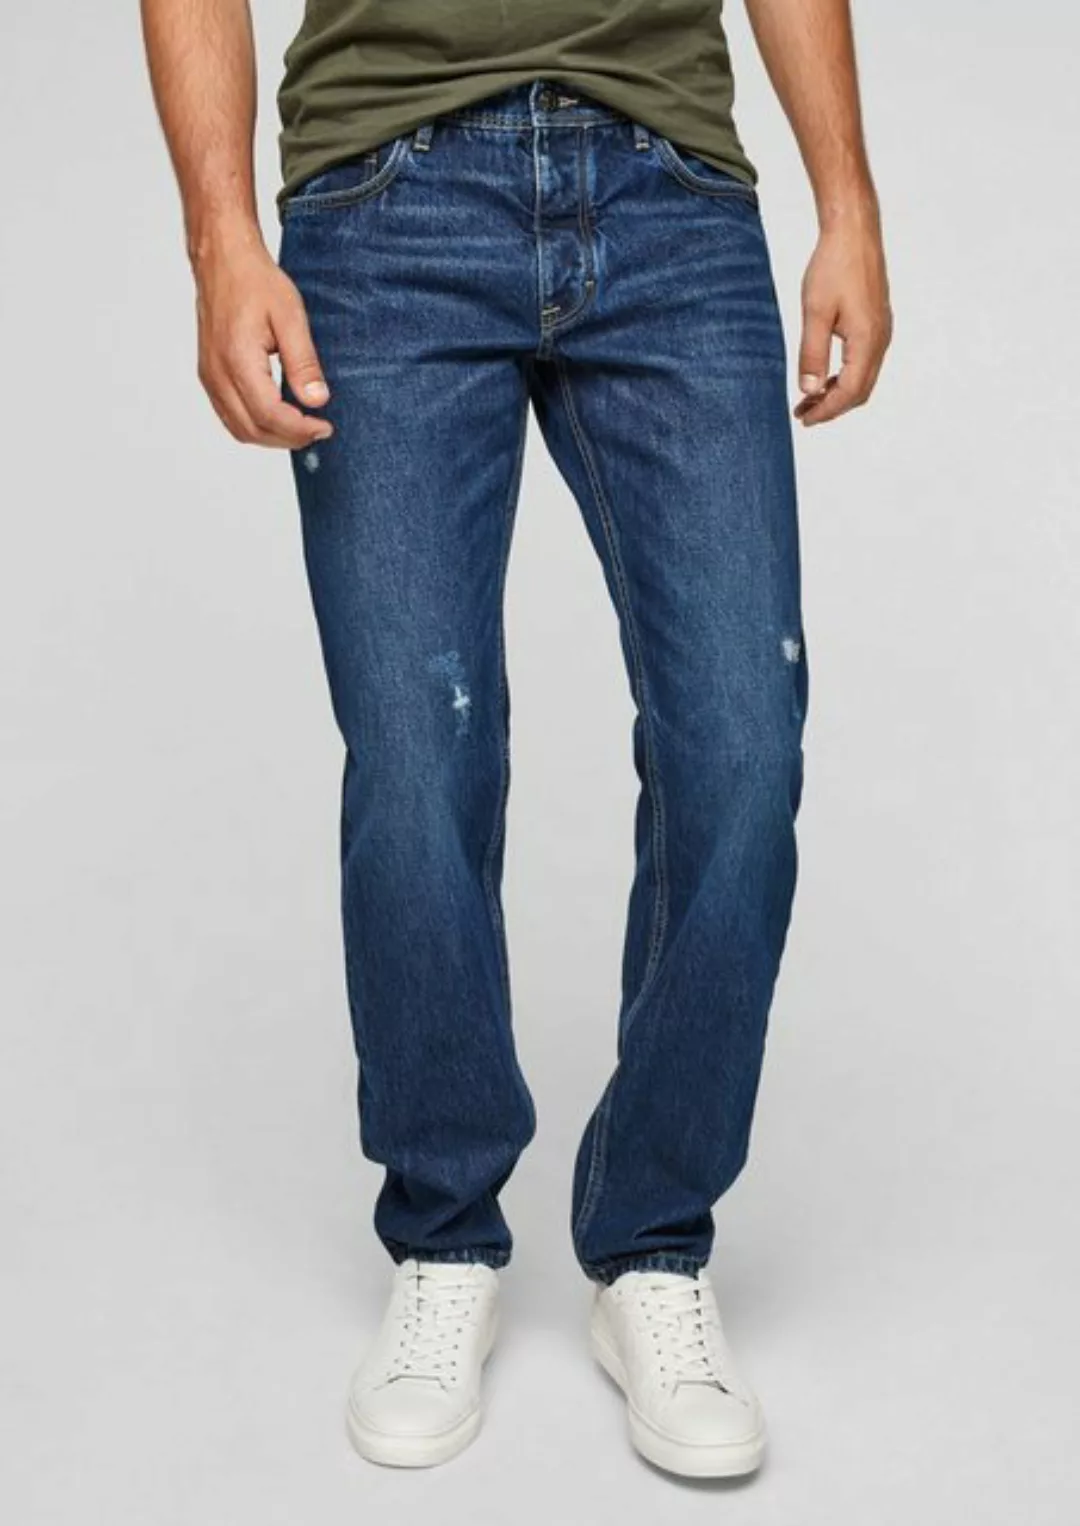 s.Oliver 5-Pocket-Jeans Regular: Blaue Jeans Destroyes, Waschung günstig online kaufen